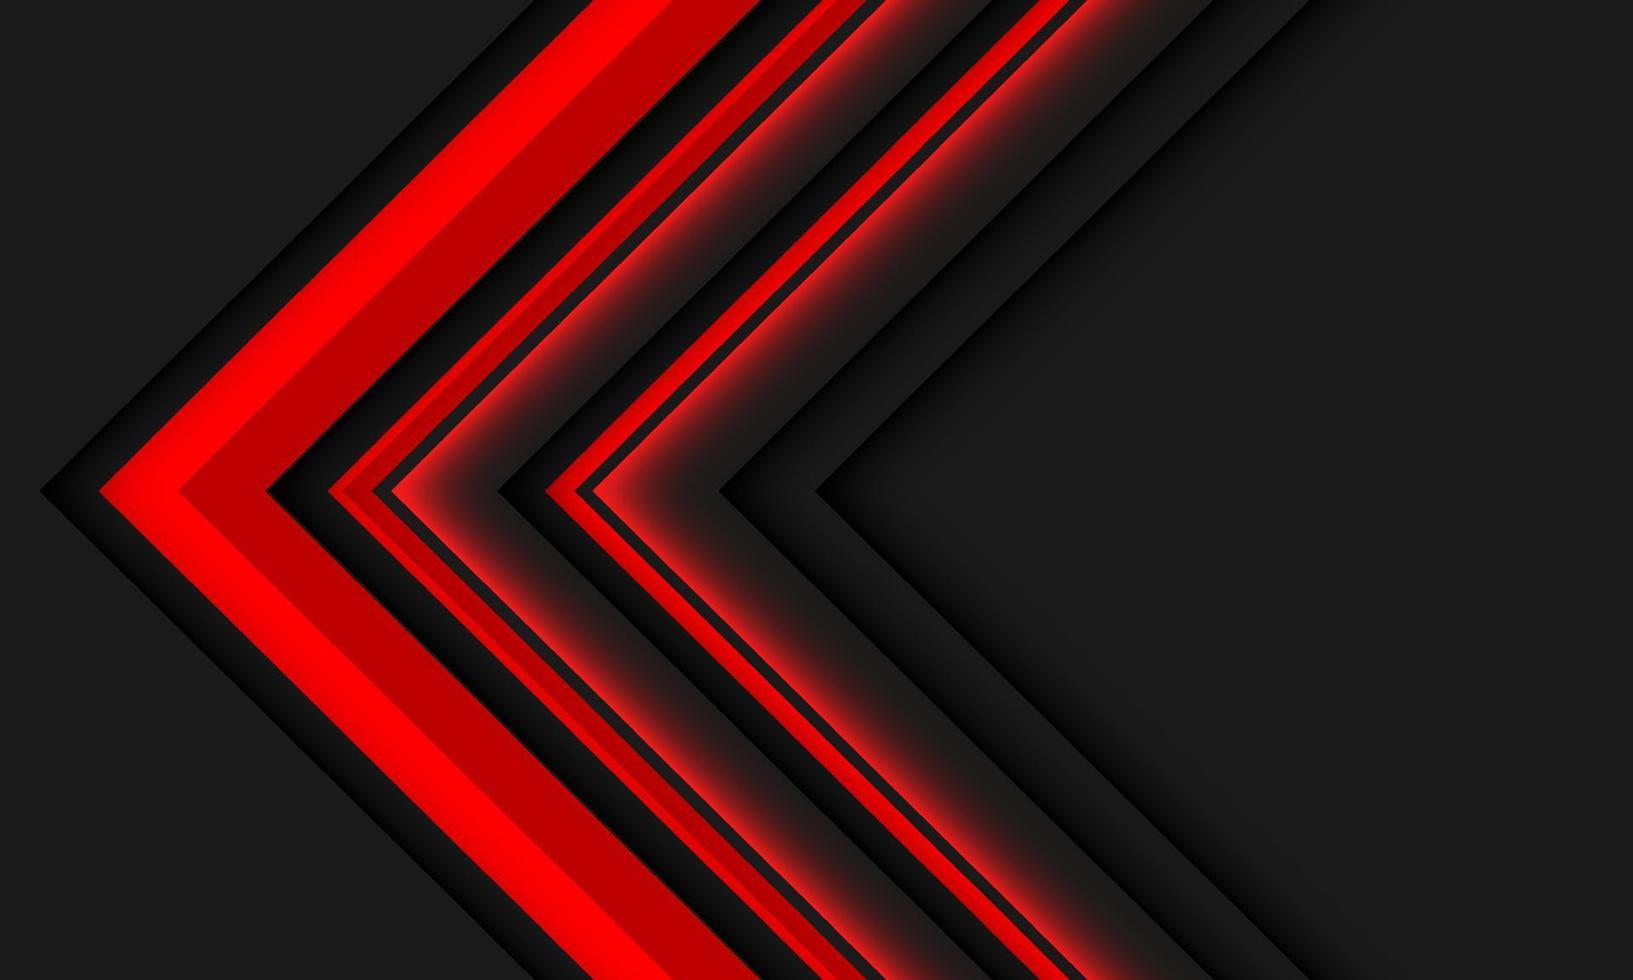 direção de seta de linhas vermelhas abstratas geométricas no design cinza moderno vetor de fundo futurista